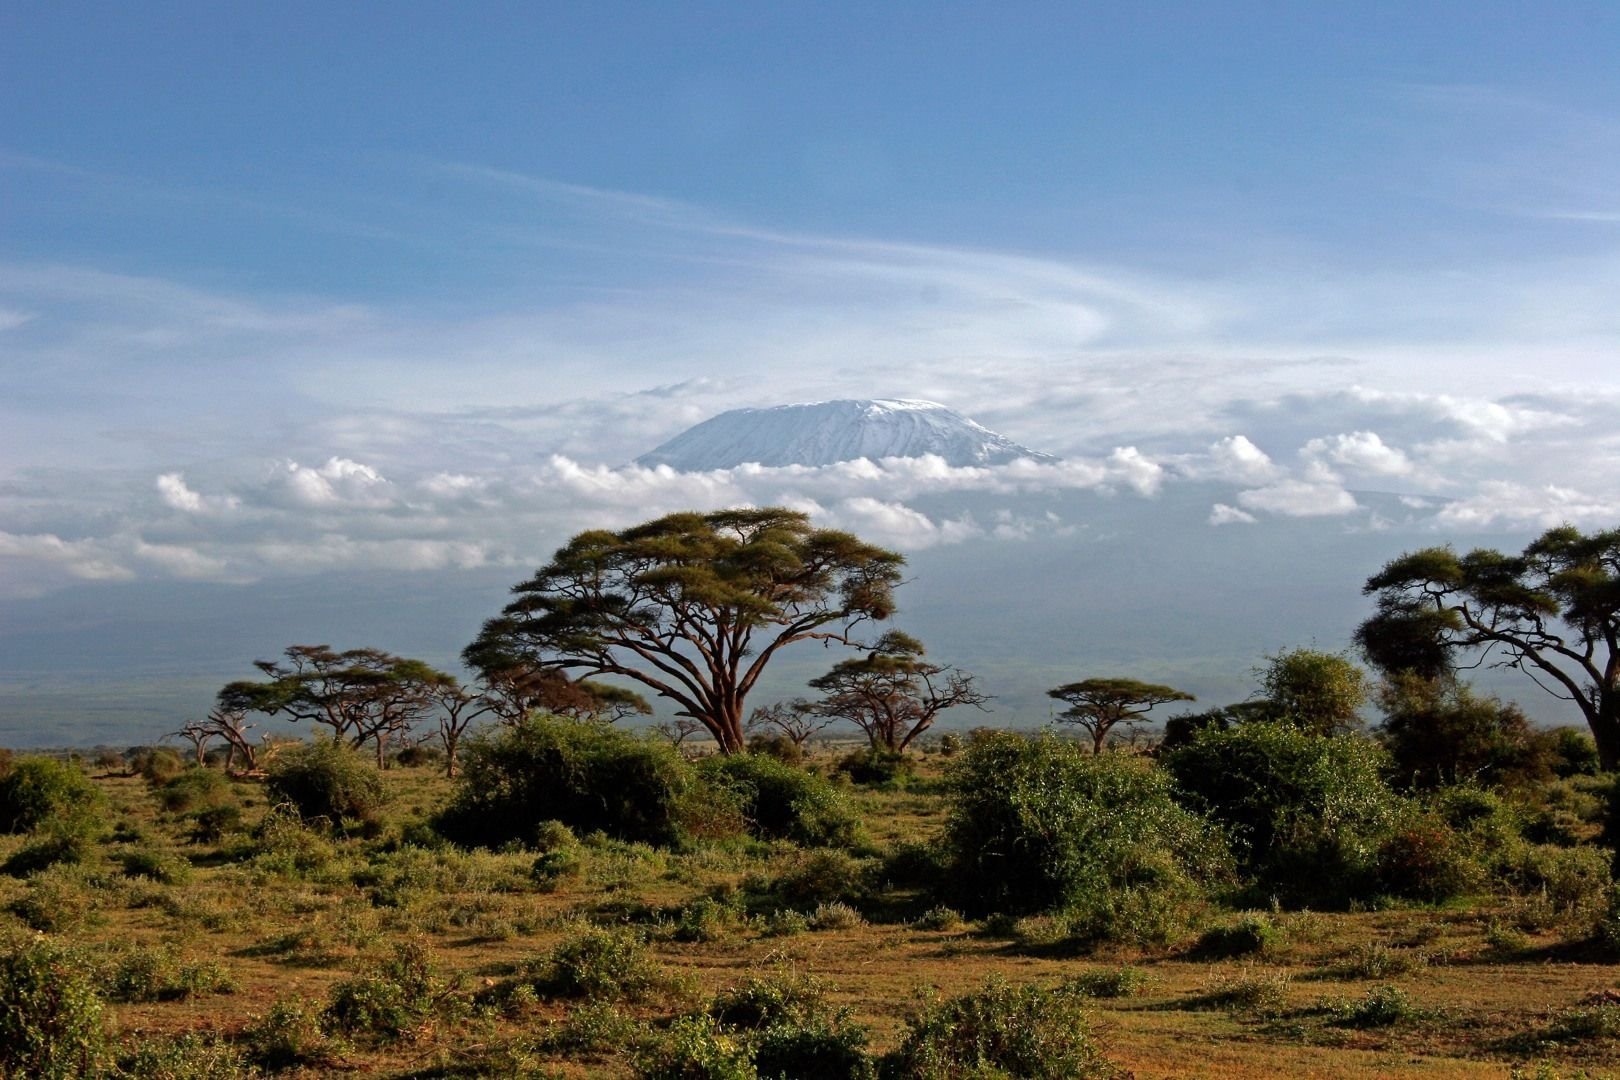 Саванны редколесья и кустарники северной америки. Национальный парк Амбосели Кения. Национальный парк Килиманджаро в Африке. Национальный парк Килиманджаро в Танзании. Саванна Килиманджаро.